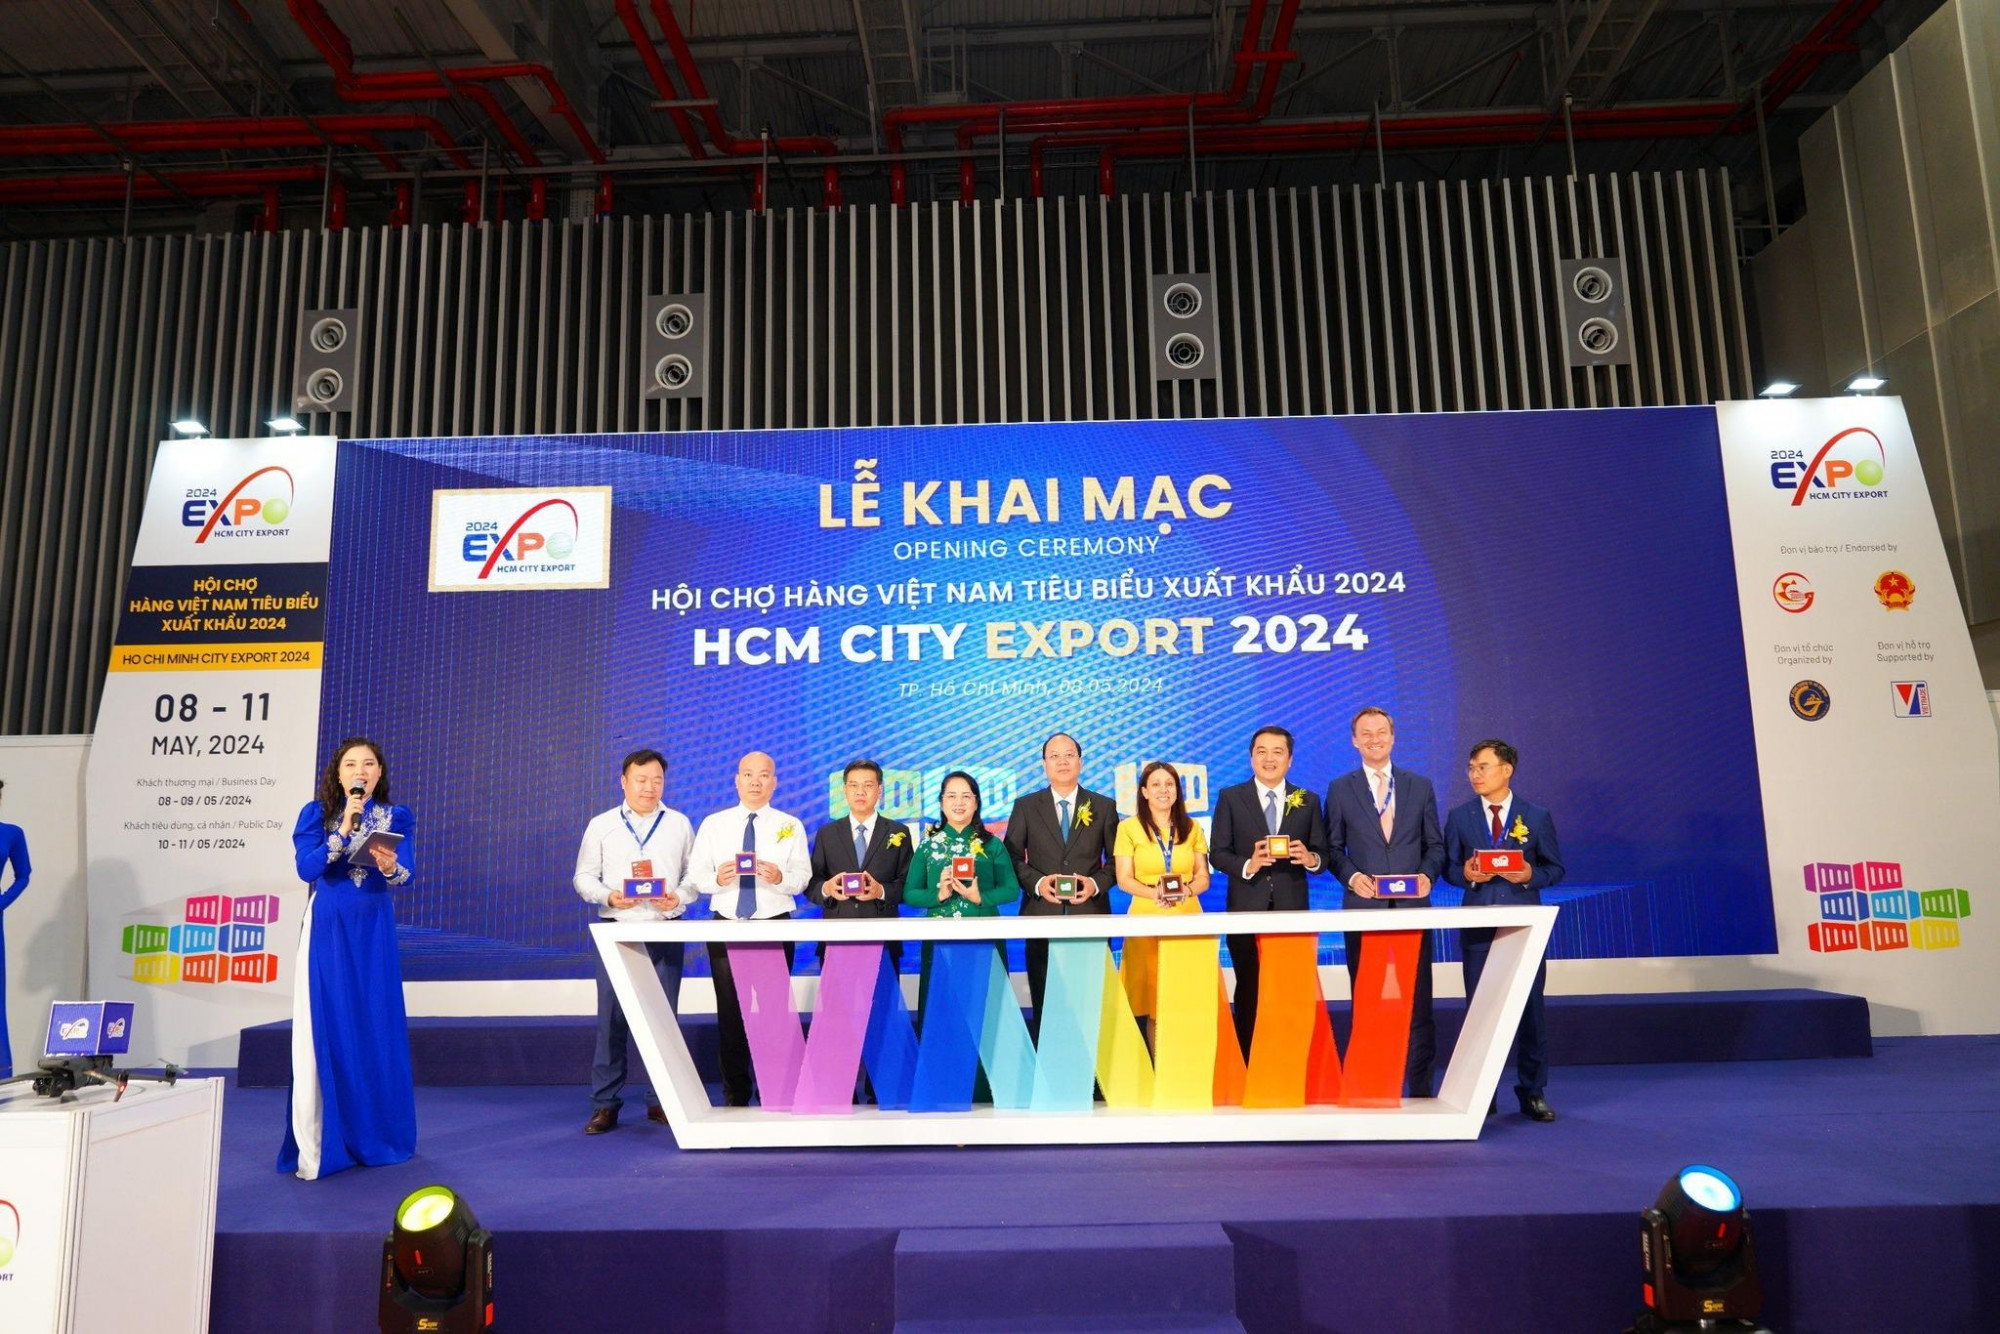 Sự kiện HCMC Export chính thức quay trở lại với quy mô lớn gấp đôi so với năm 2023 -Nguồn ảnh: Fanpage HCM City Export